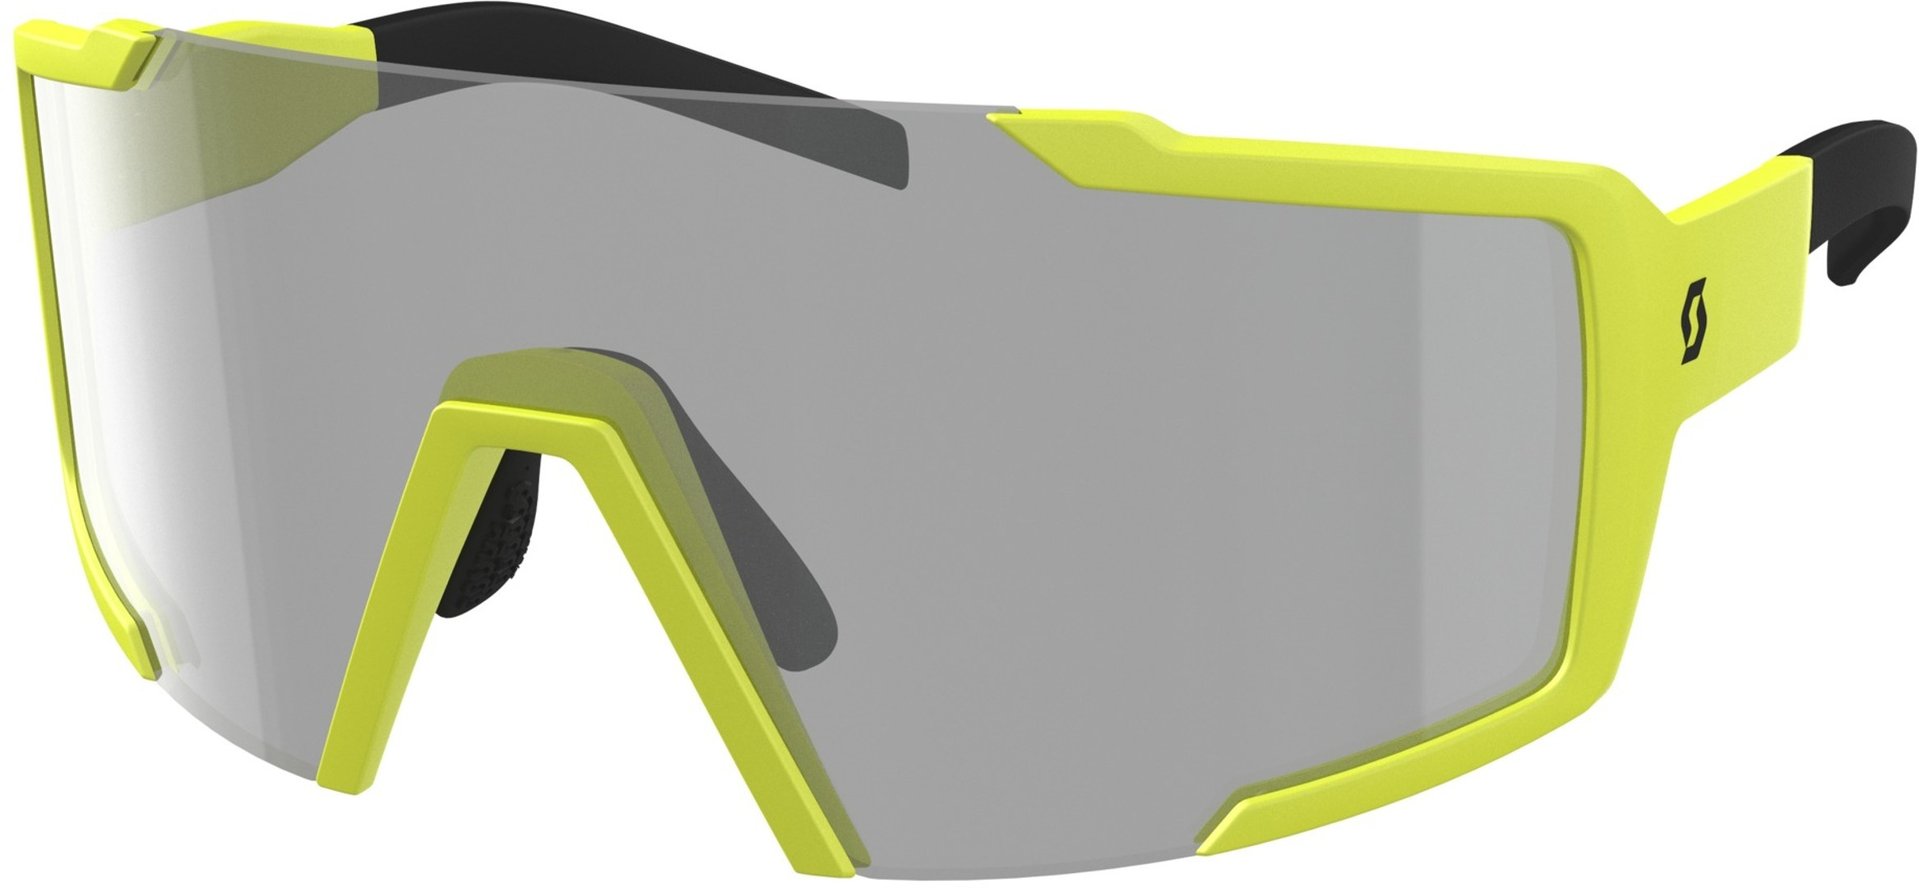 солнцезащитные очки gi mai серый Солнцезащитные очки Scott Shield LS с регулируемой носовой накладкой, желтый/серый